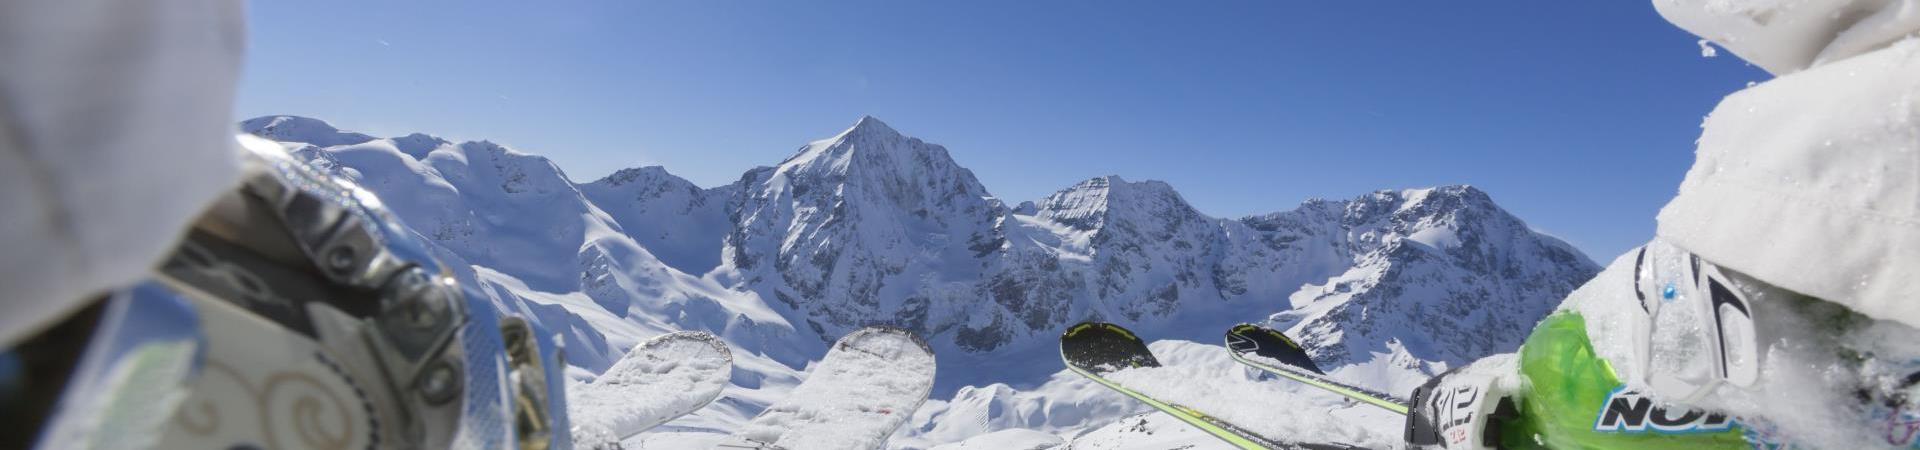 skifahren-ortler-vinschgau-fb